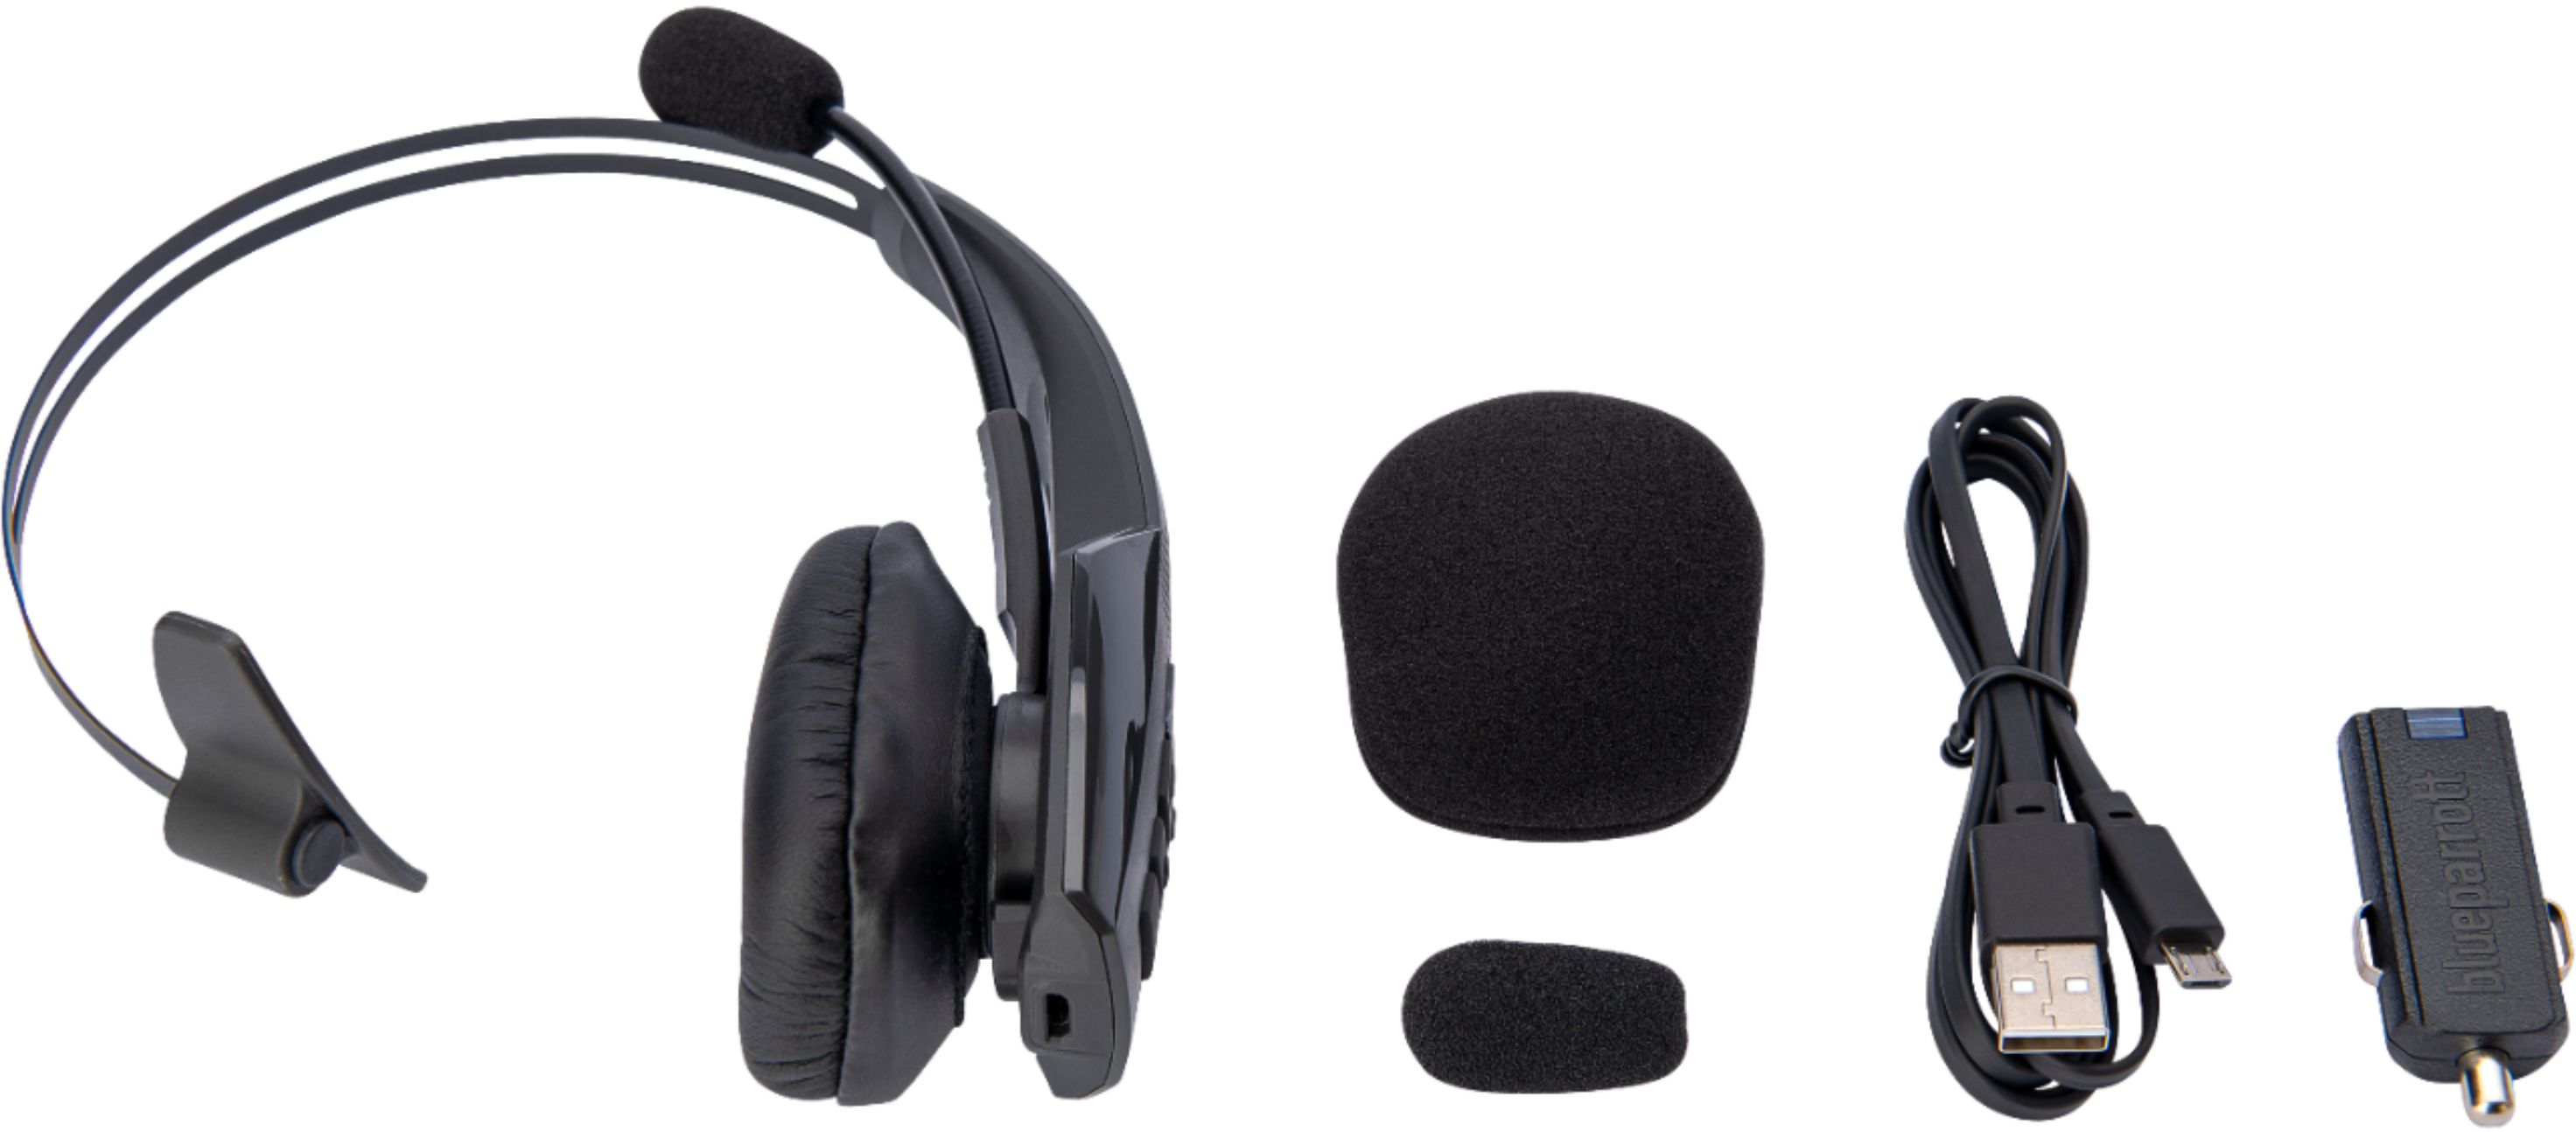 BlueParrott B350-XT Wireless On-Ear Headset Black 204260 - Best Buy